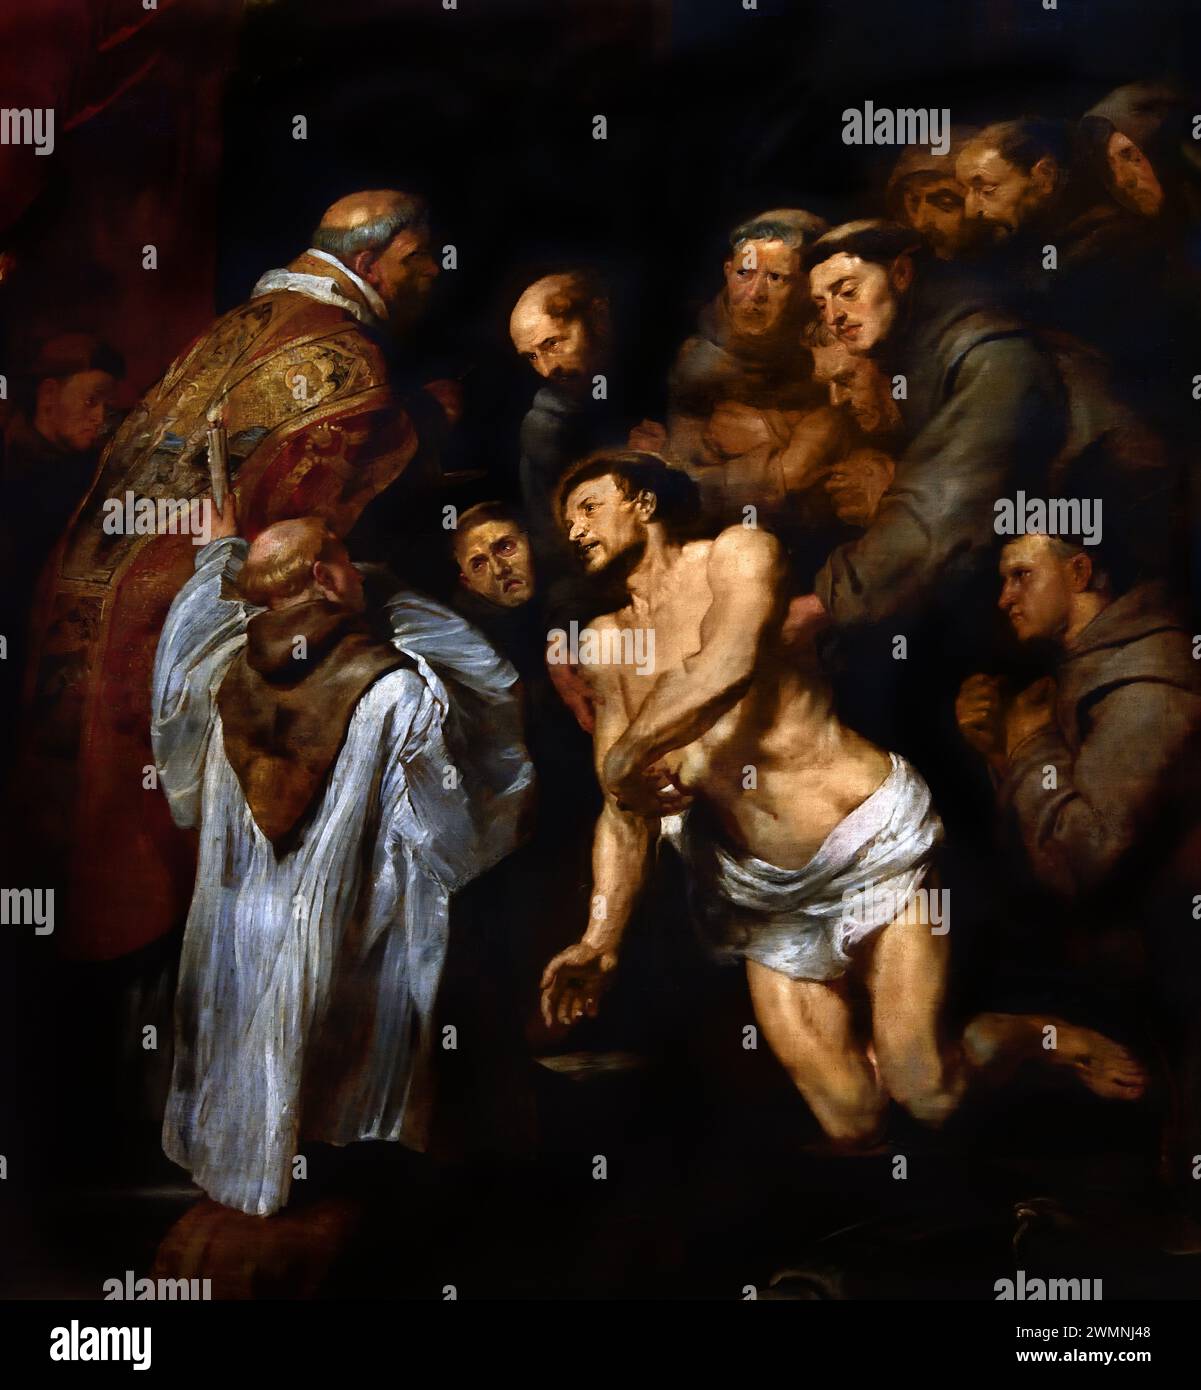 La dernière communion de Saint François d'assise 1619 par Pierre Paul Rubens (1577-1640). Artiste et diplomate flamand, flamand, Baroque , Musée Royal des Beaux-Arts, Anvers, Belgique, belge Banque D'Images